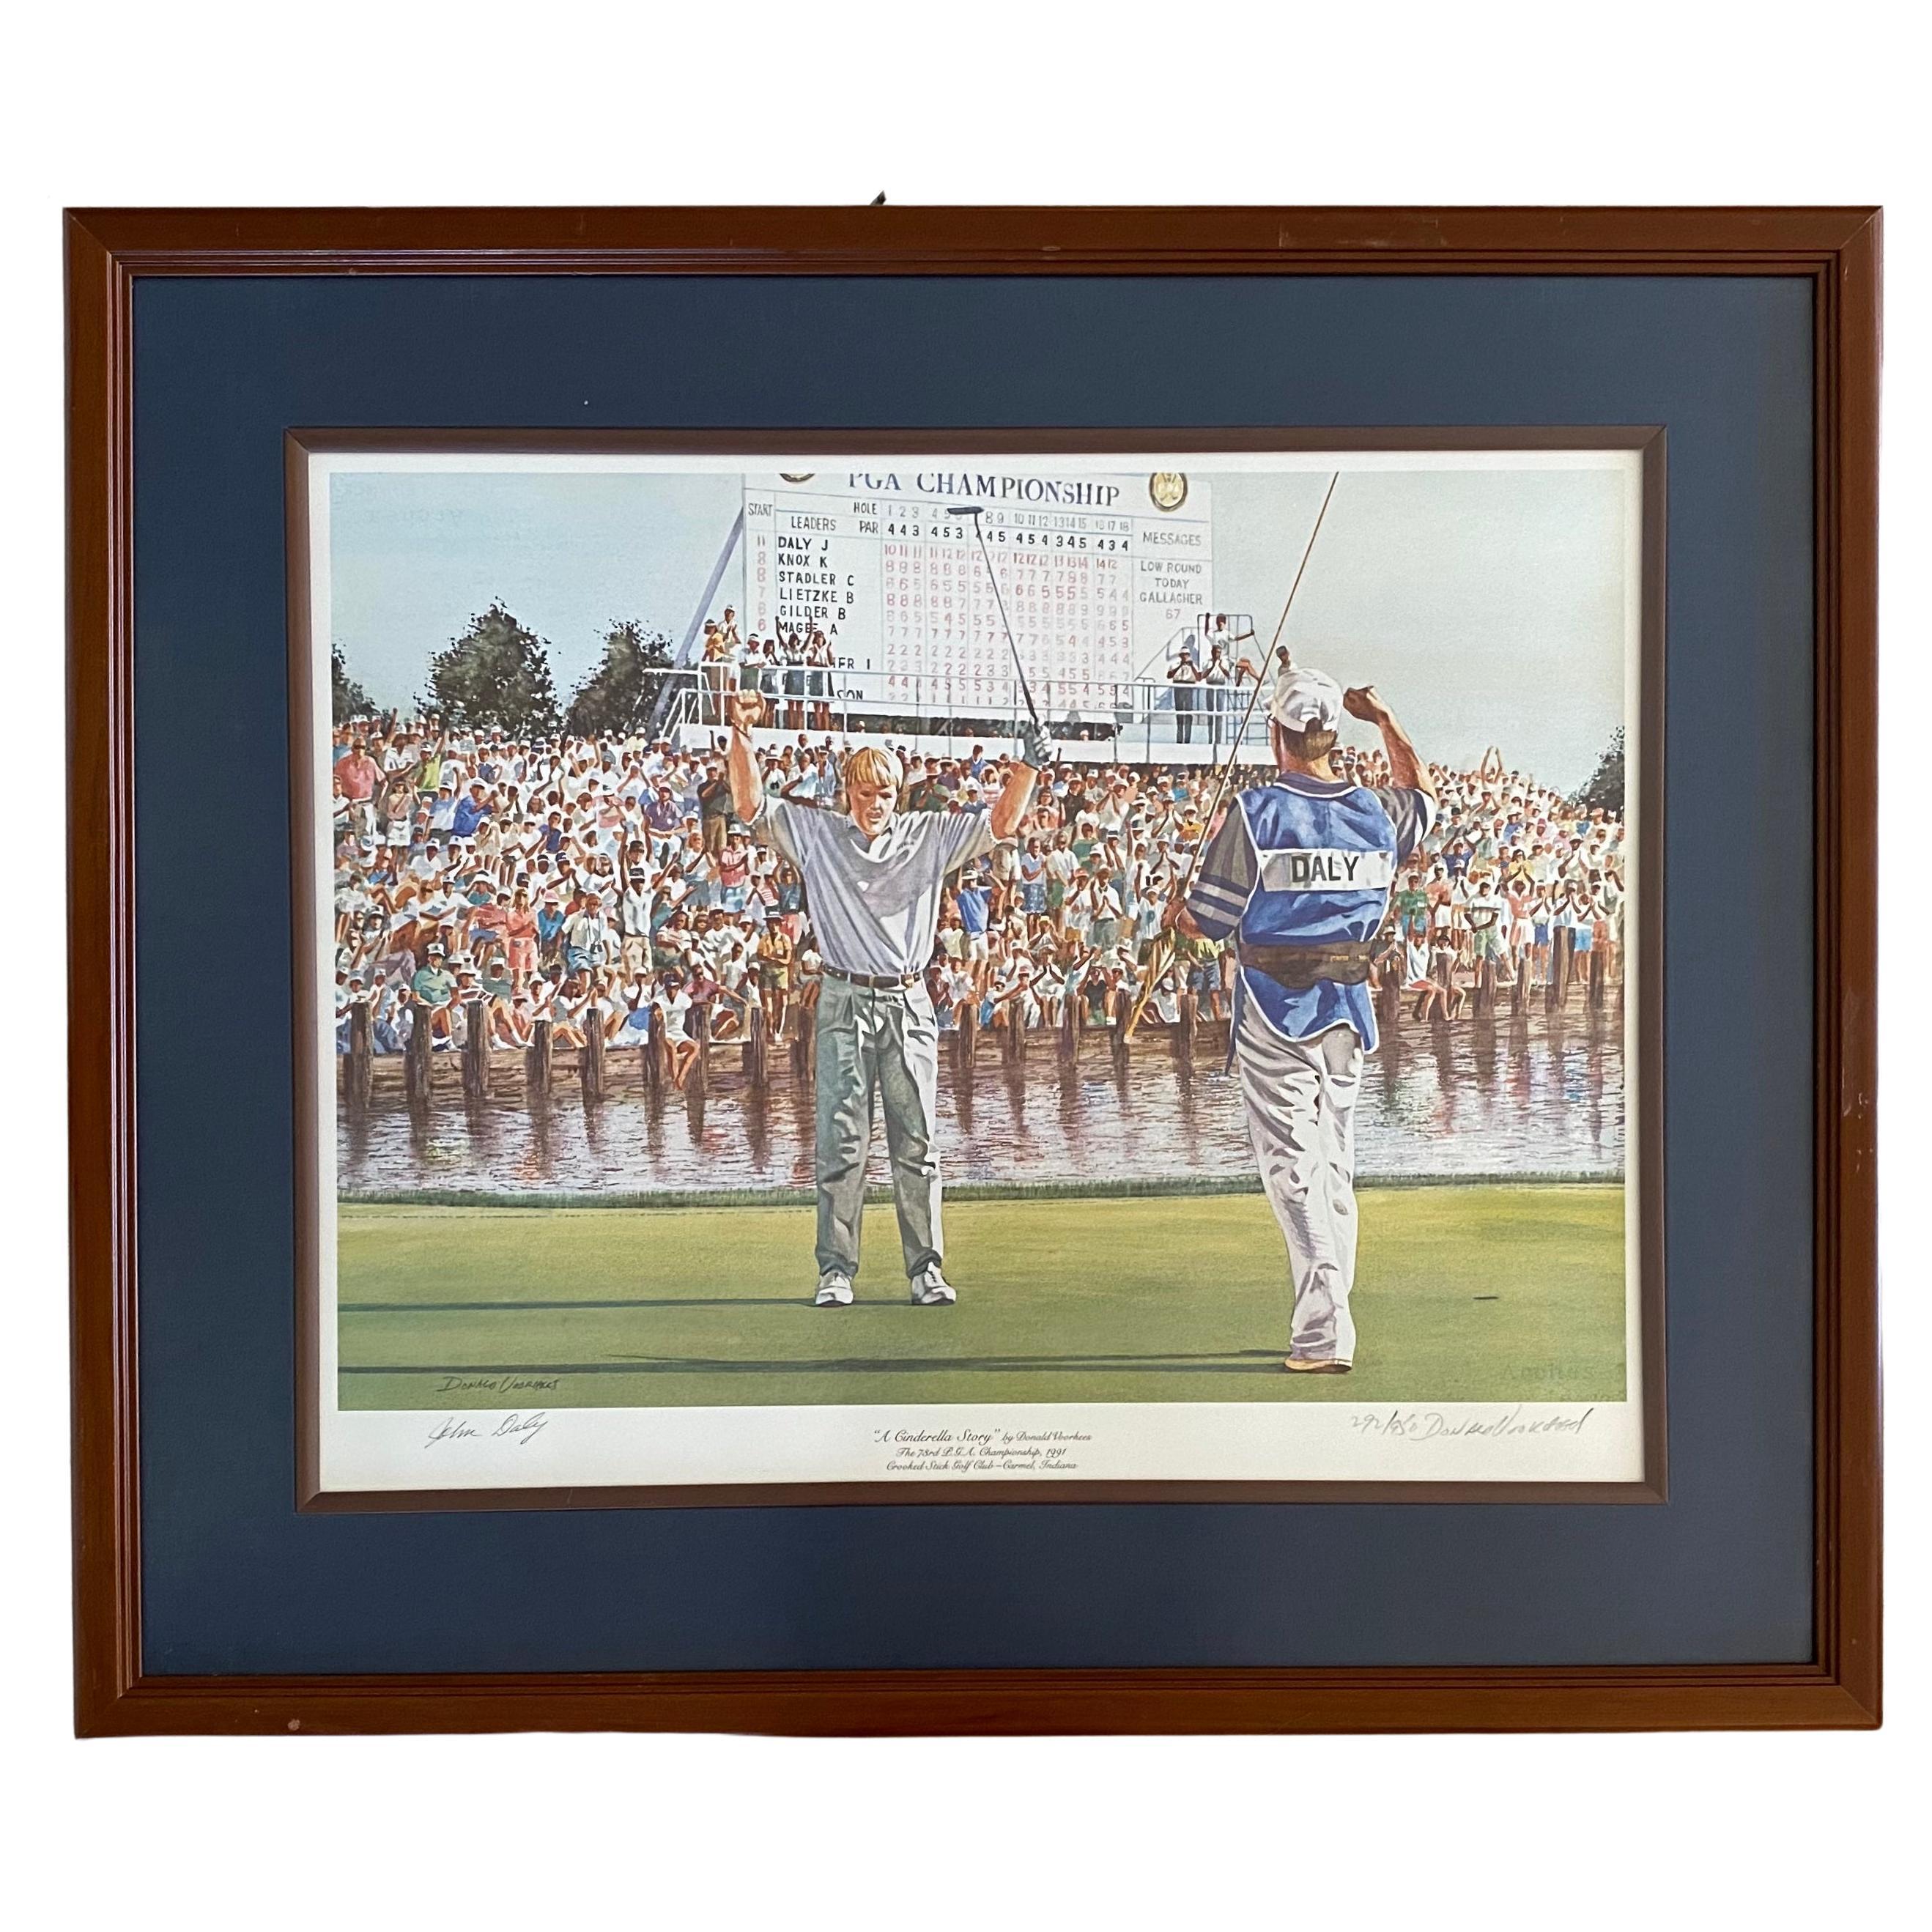 Lithographie autographiée du tournoi de golf de la PGA, souvenirs sportifs certifiés